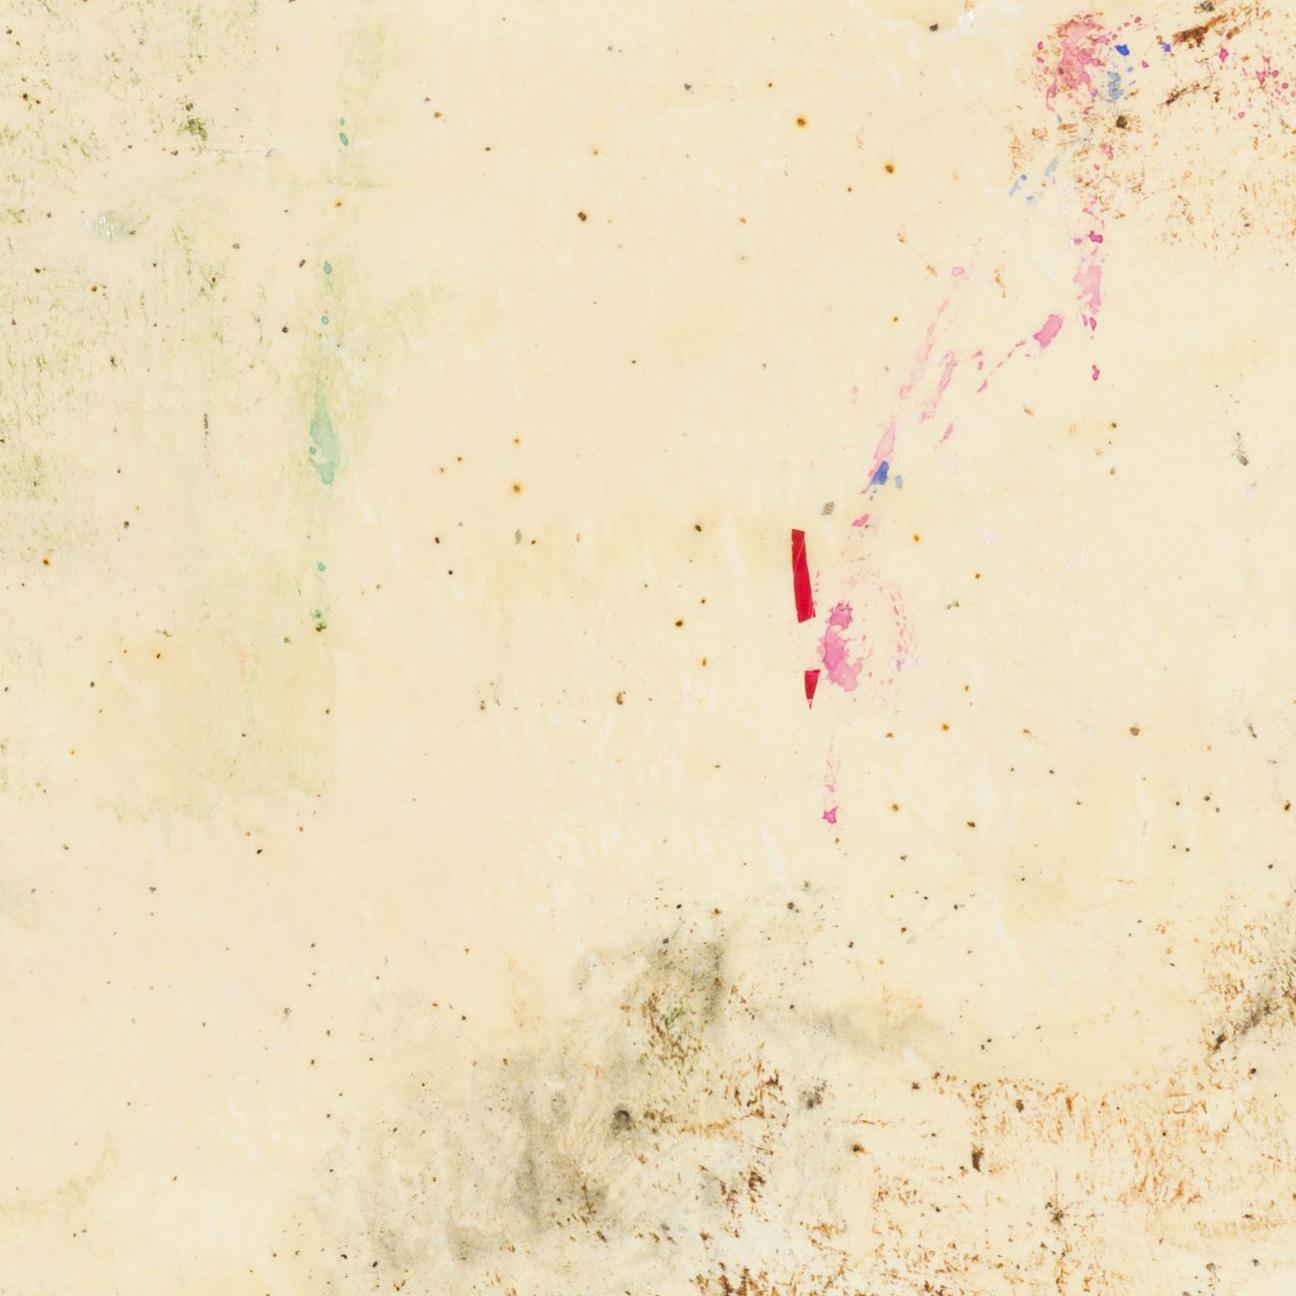 techniques mixtes sur papier ; non encadré 

feuille entière 22 x 30 pouces 

signé en en bas à droite

Le peintre néoromantique Hiro Yokose fusionne de multiples couches de cire et de peinture à l'huile pour créer des paysages mystérieux et voilés,